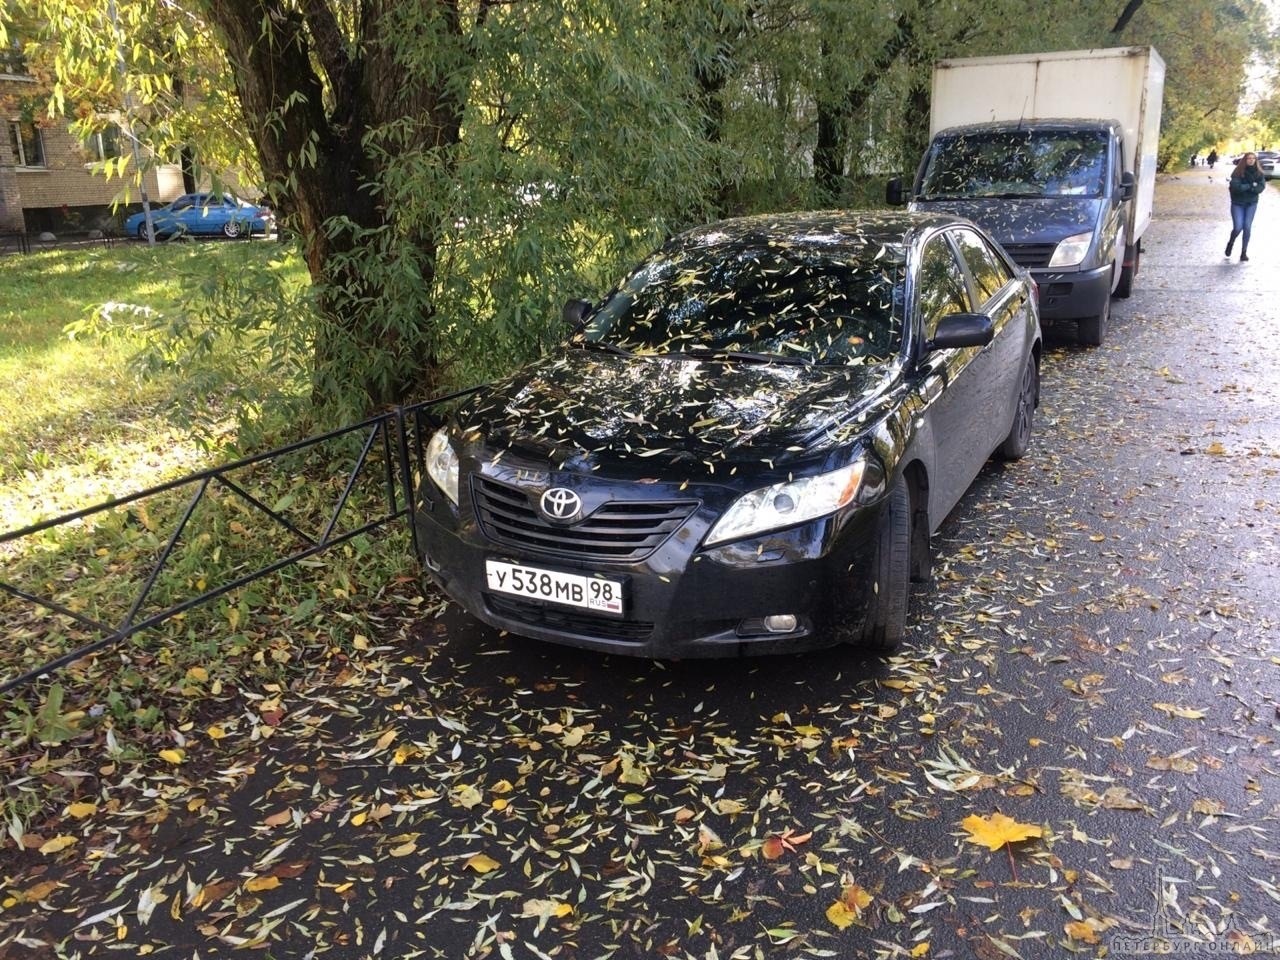 30 ноября в Калининском районе по улице Вавиловых от дома 9 в период с 7:00-8:00 был угнан автомобил...